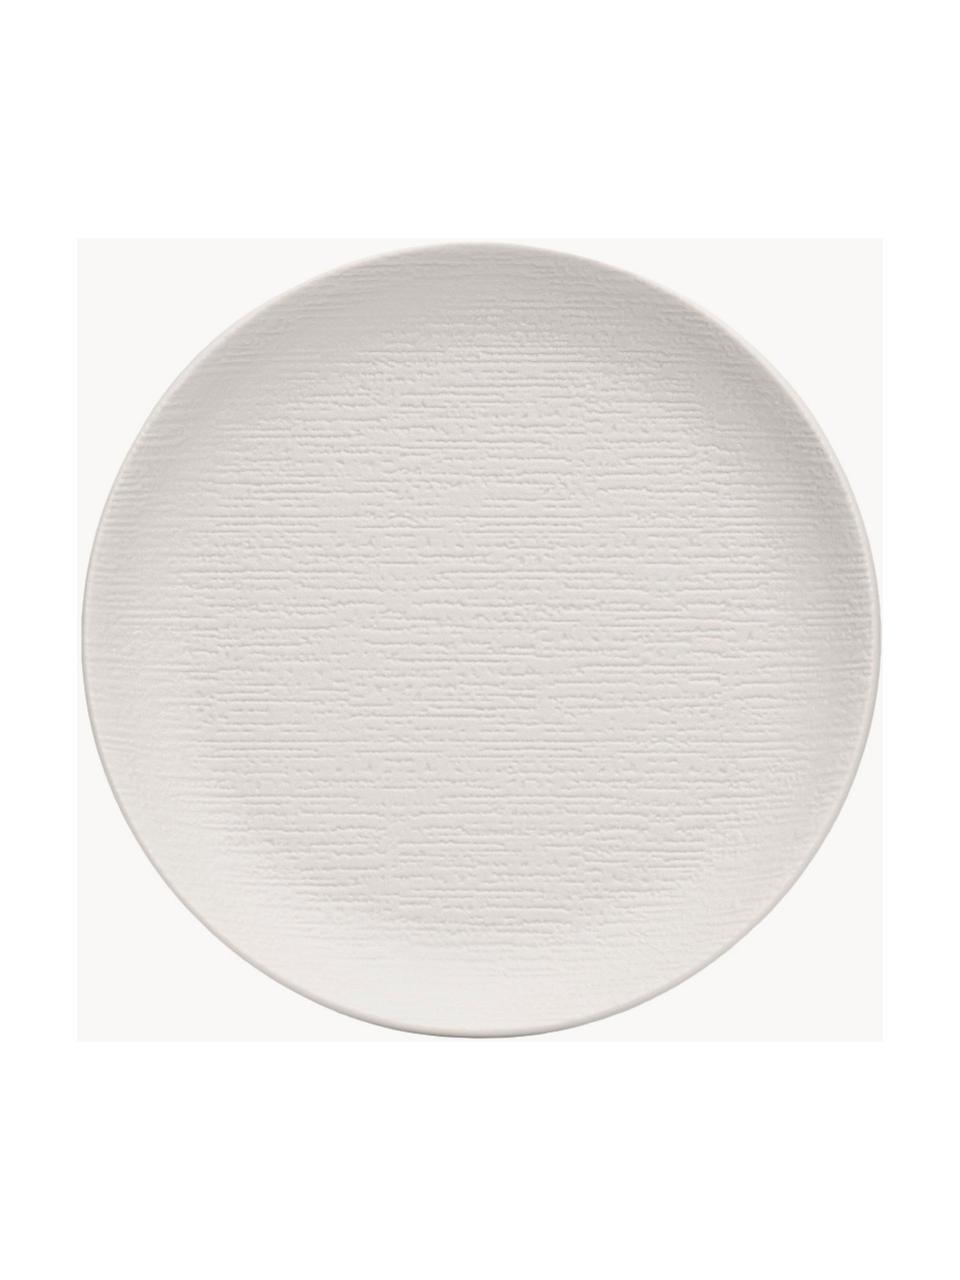 Raňajkový tanier z melamínu Trama, 4 ks, Melamín, Svetlosivá, Ø 16 x V 2 cm